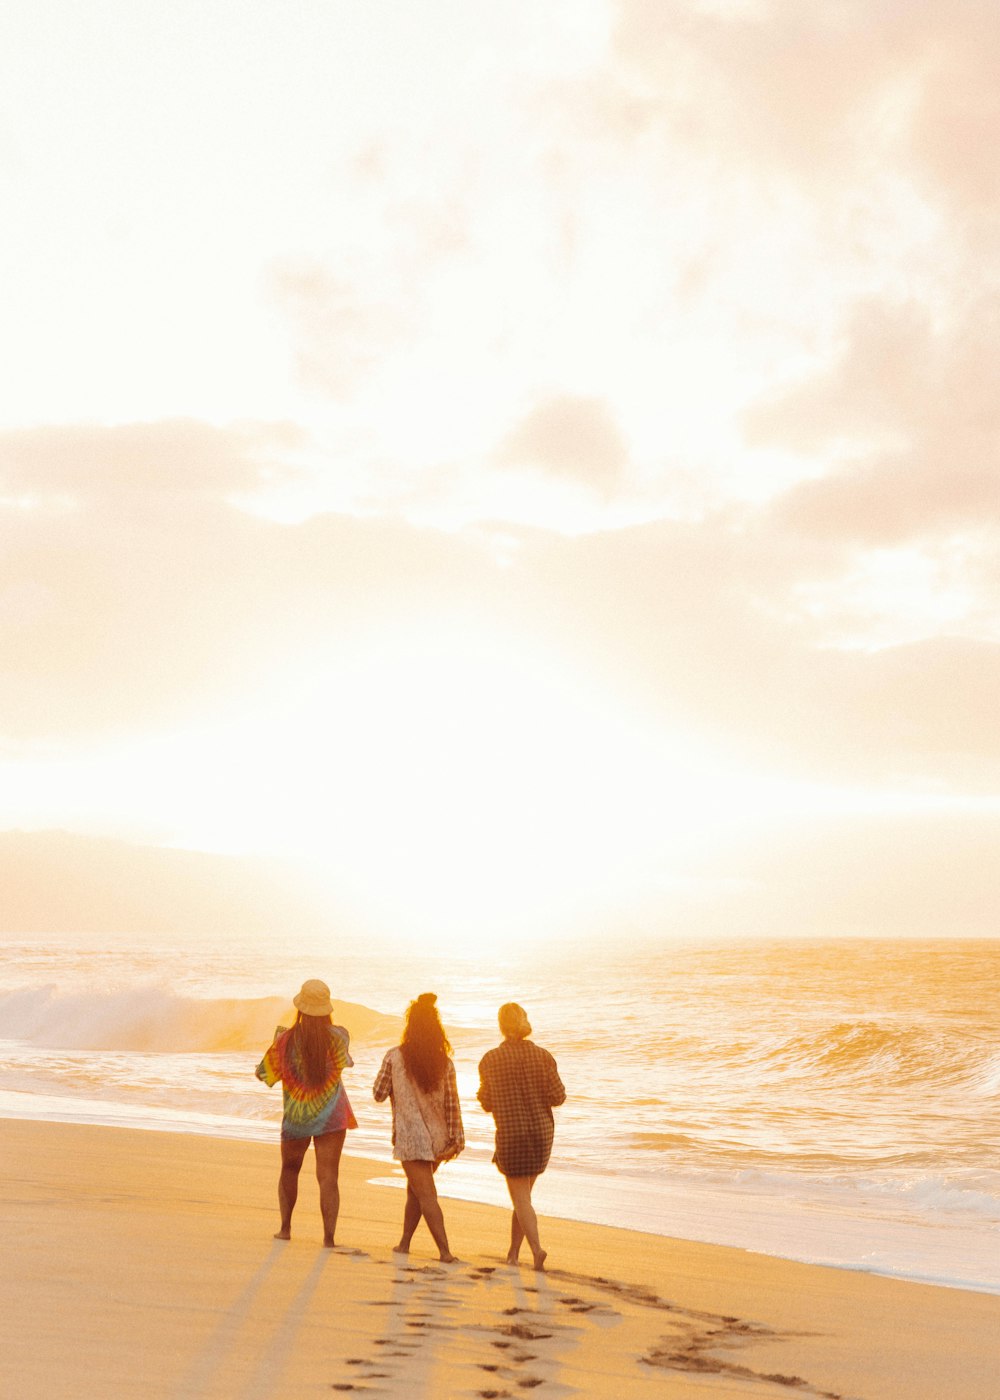 일몰 동안 해변에 서 있는 3명의 여성과 남성